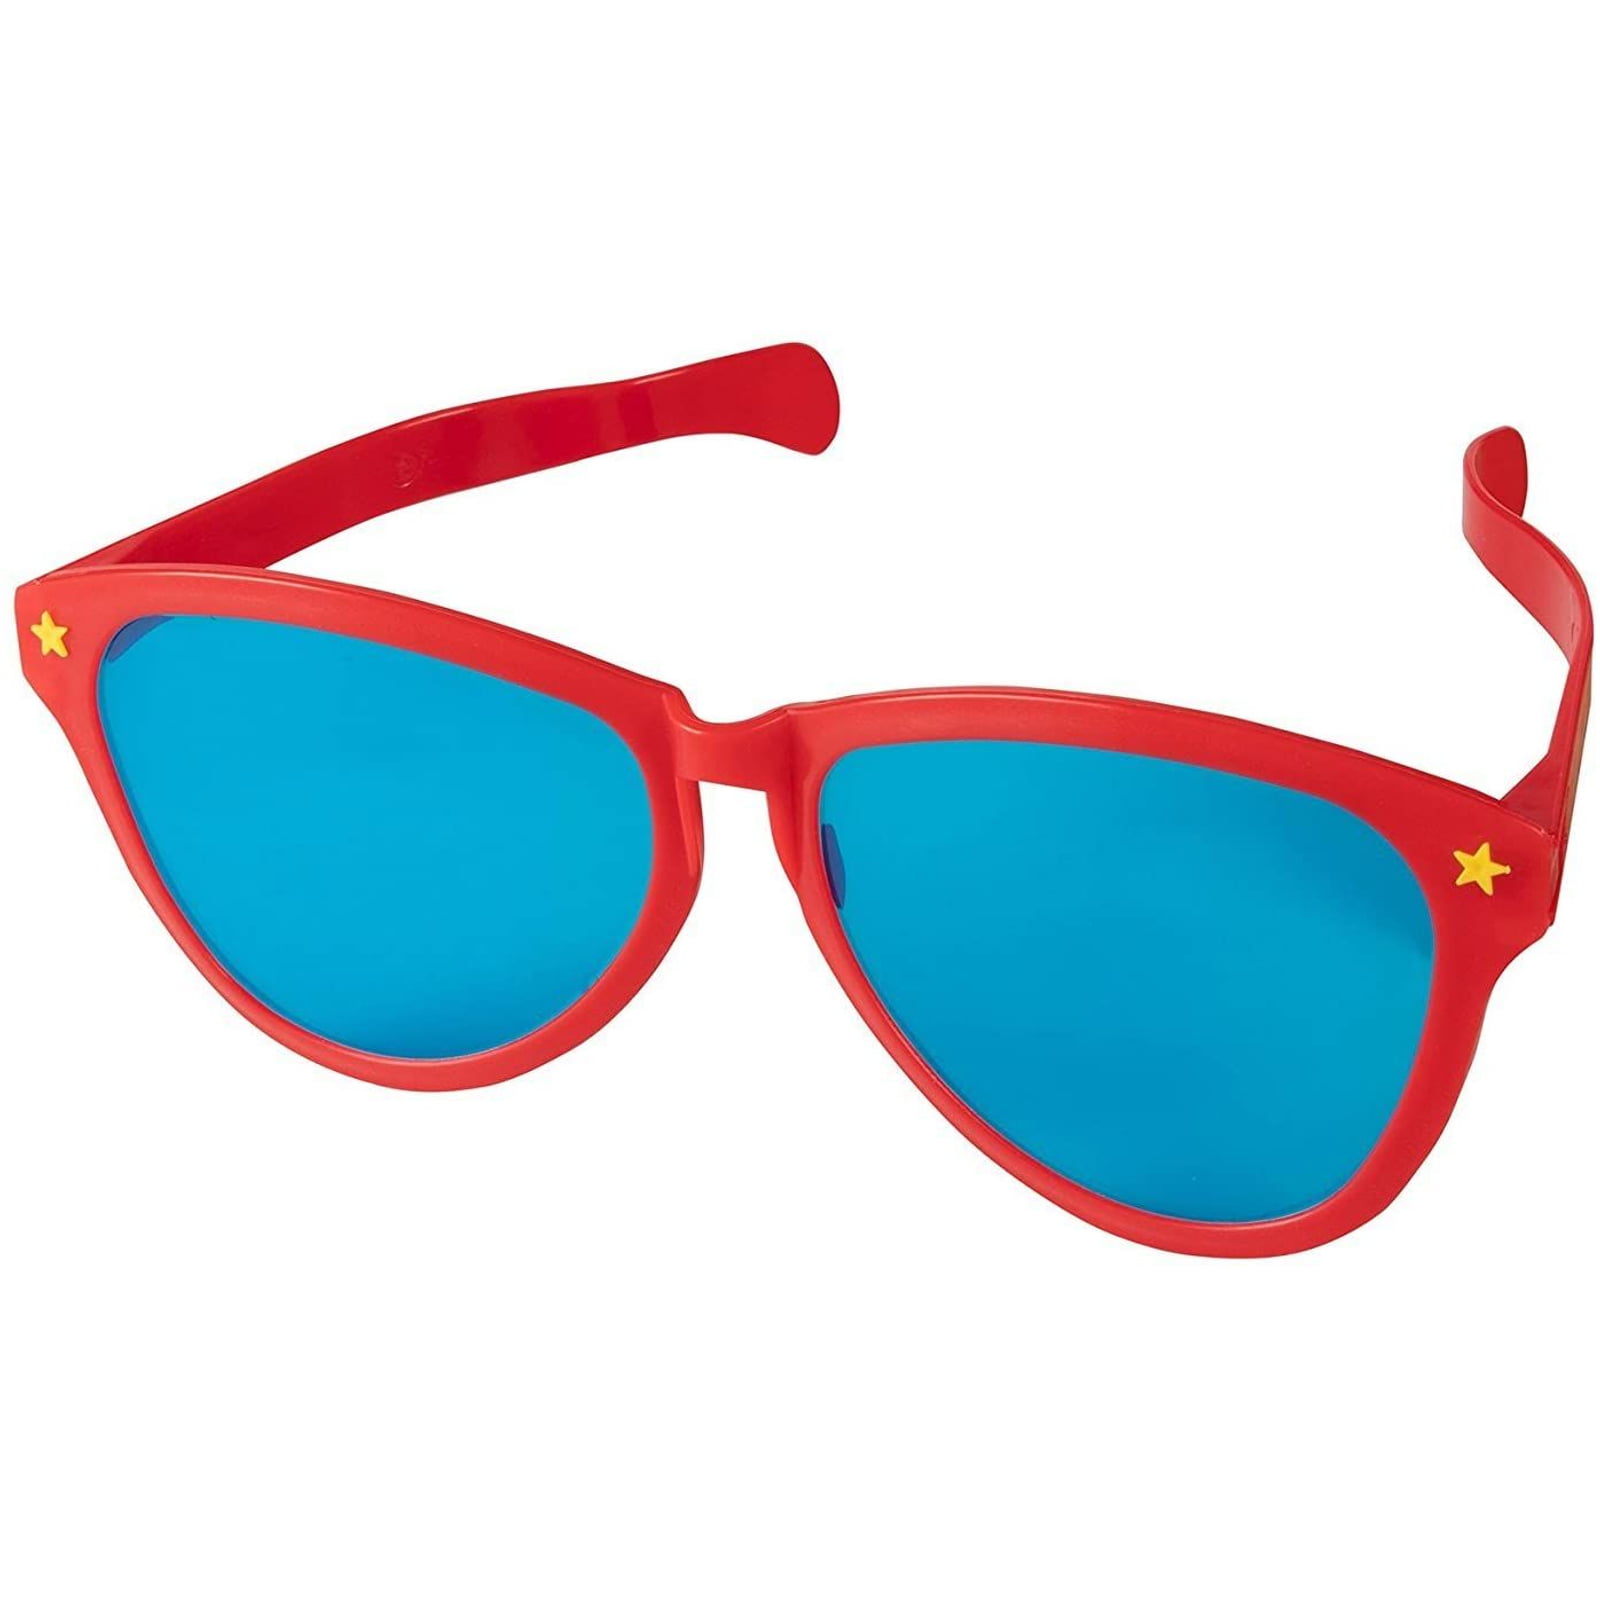 Blue Panda 12 Pack Bulk Jumbo Giant Neon Novelty Party Favor Costume Sunglasses for Kids, 3 Colors